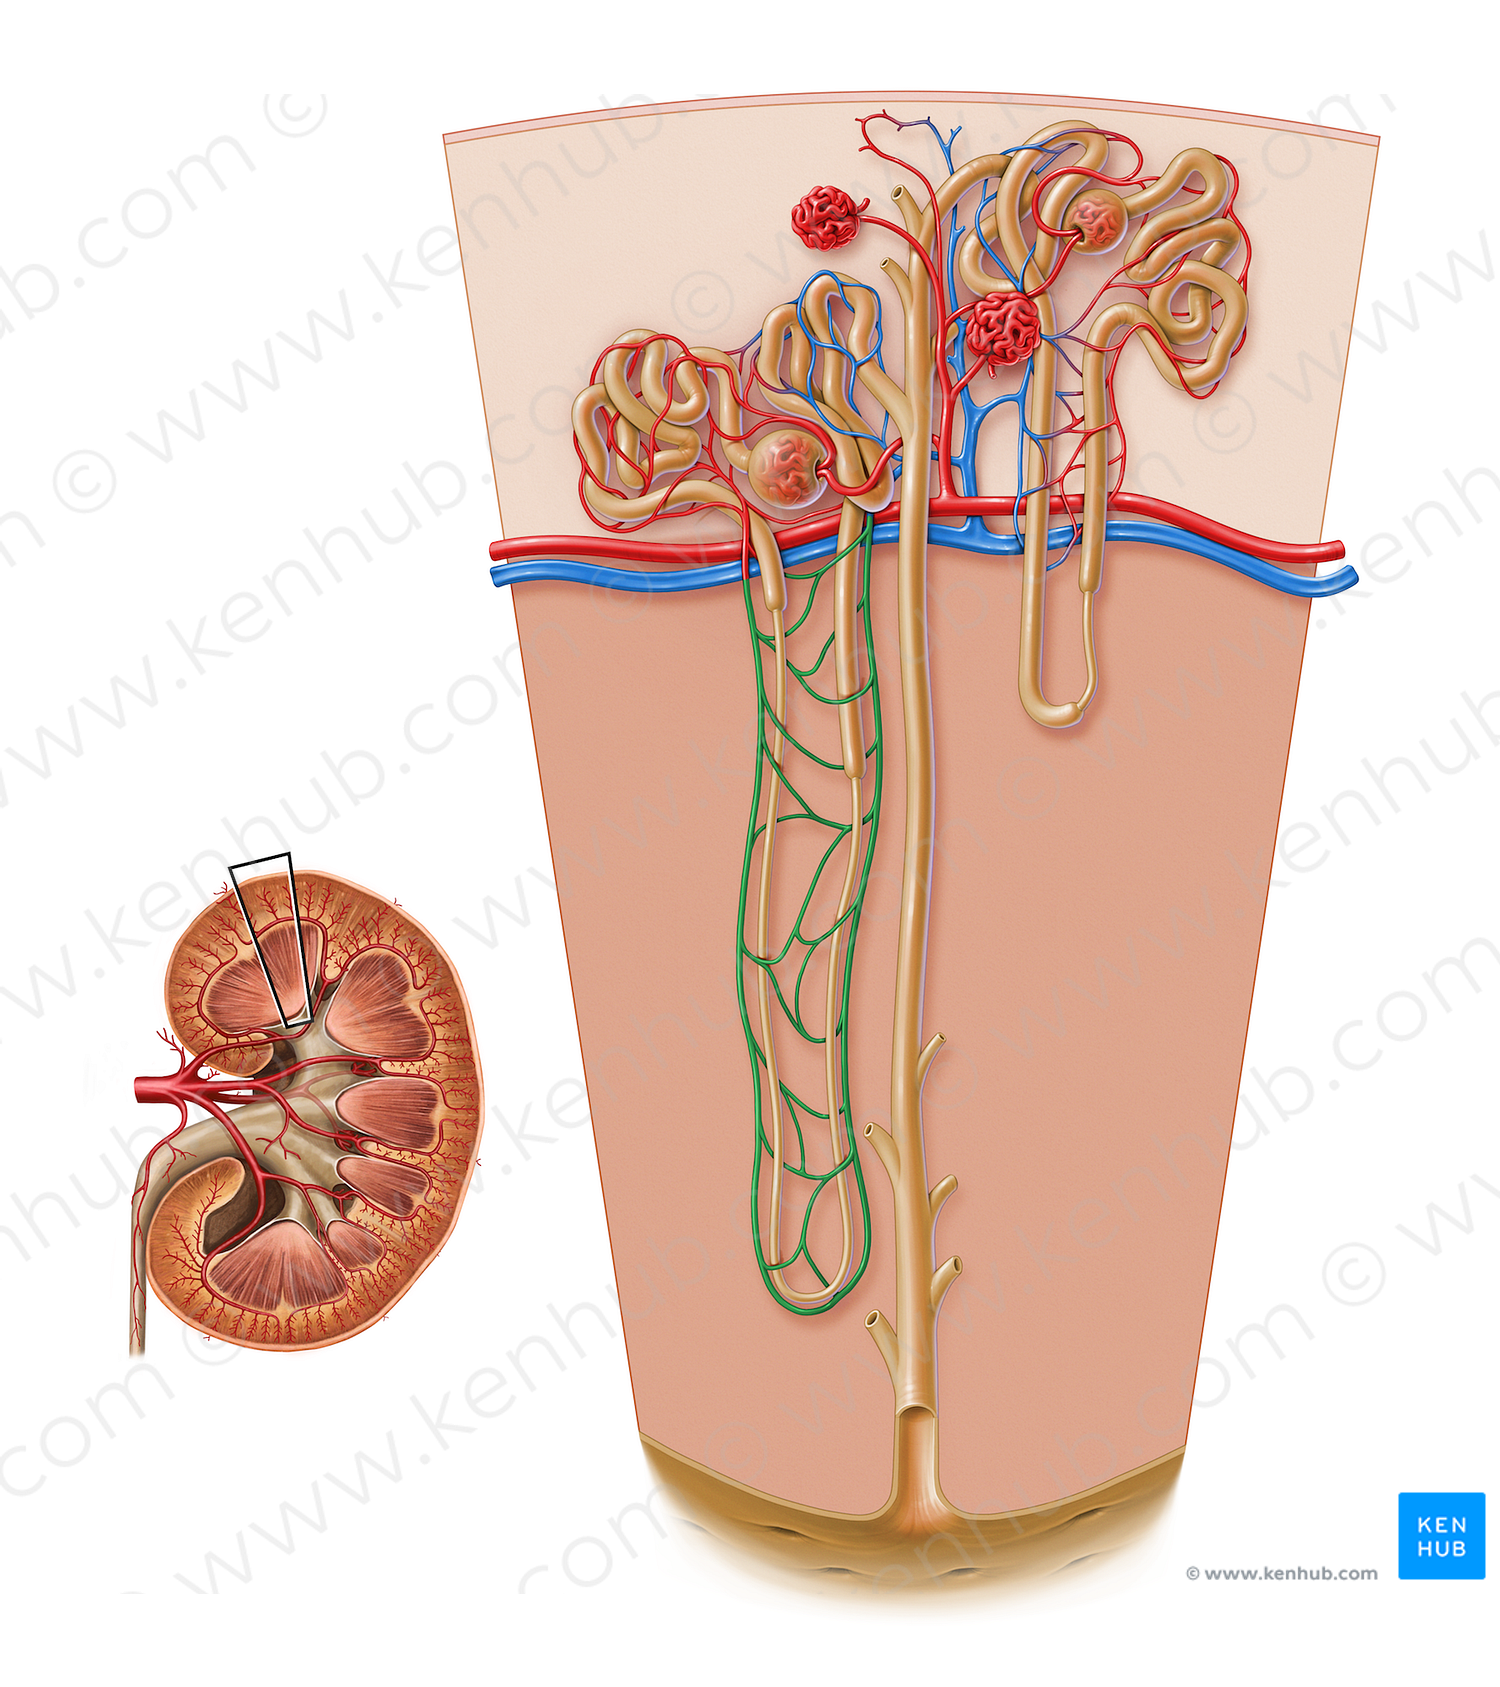 Vasa recta of kidney (#17207)